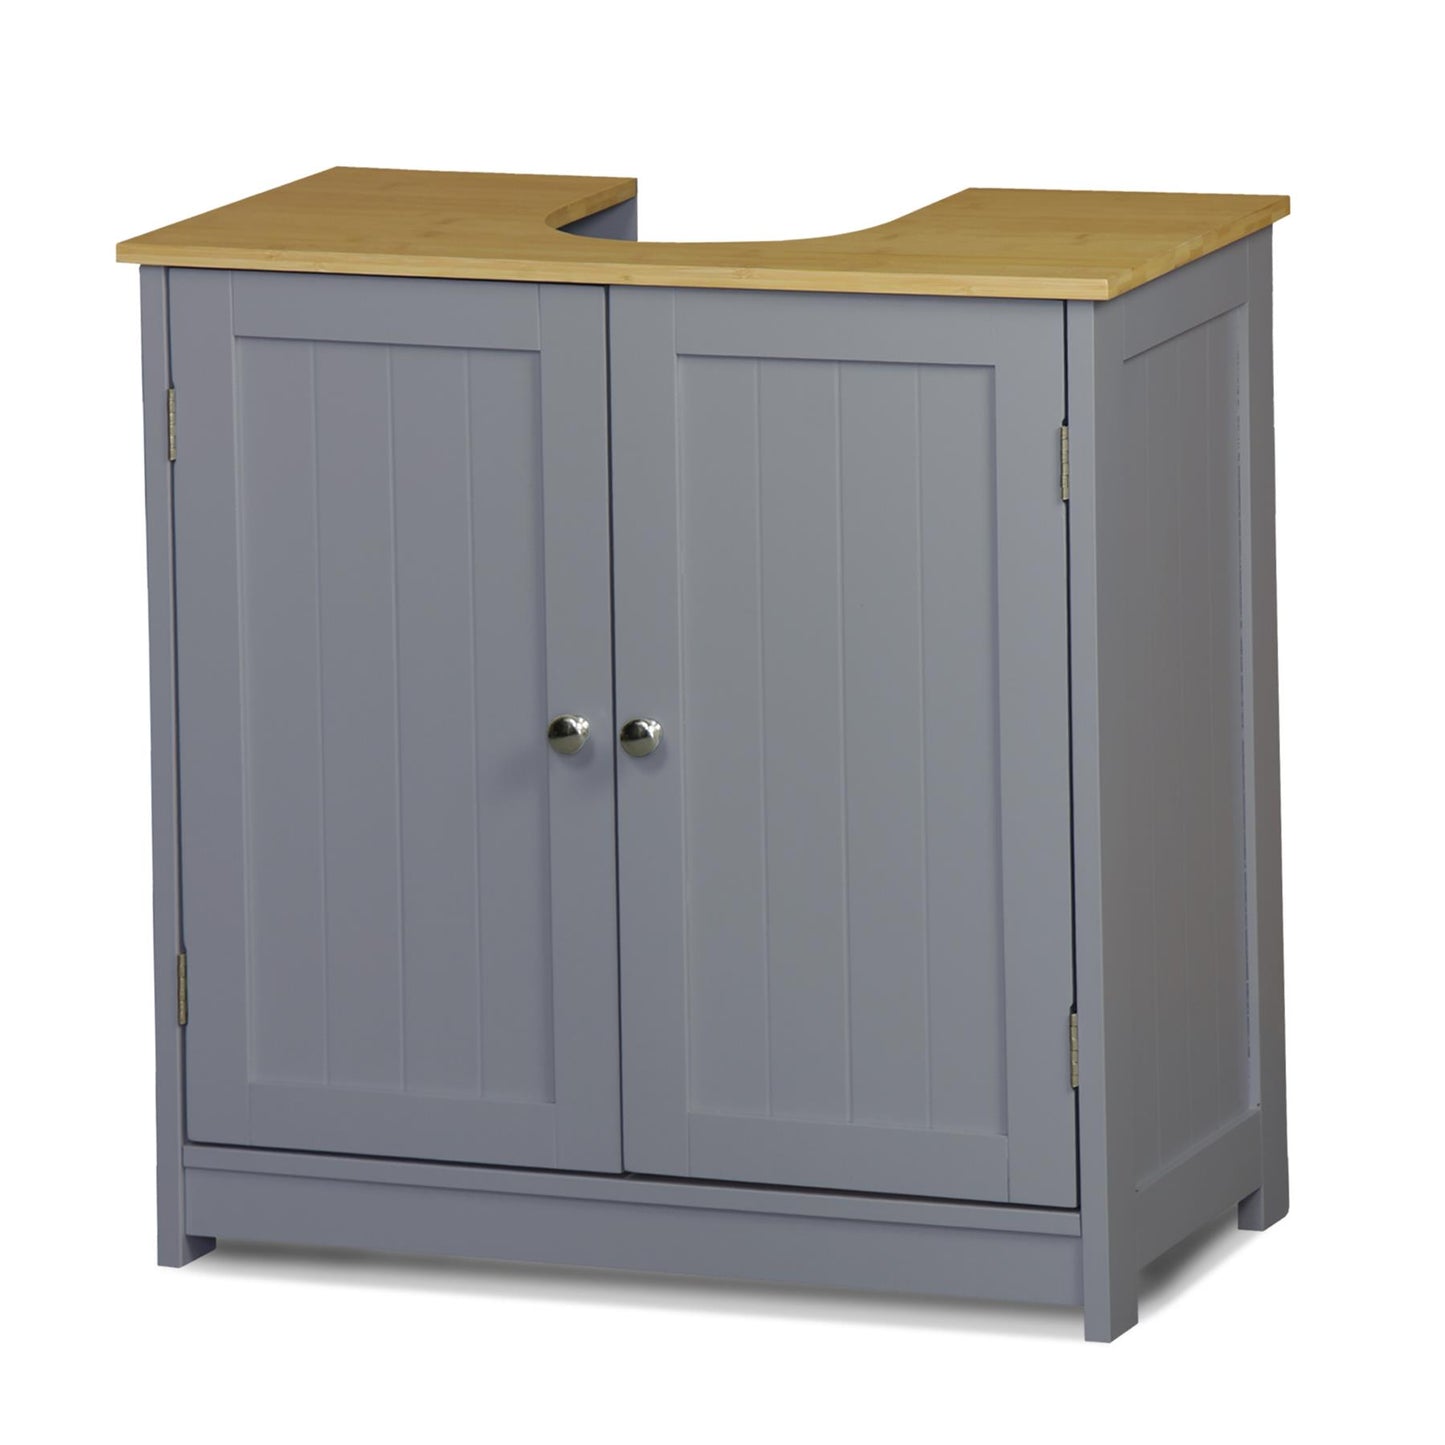 Wooden Bathroom Storage Cabinets